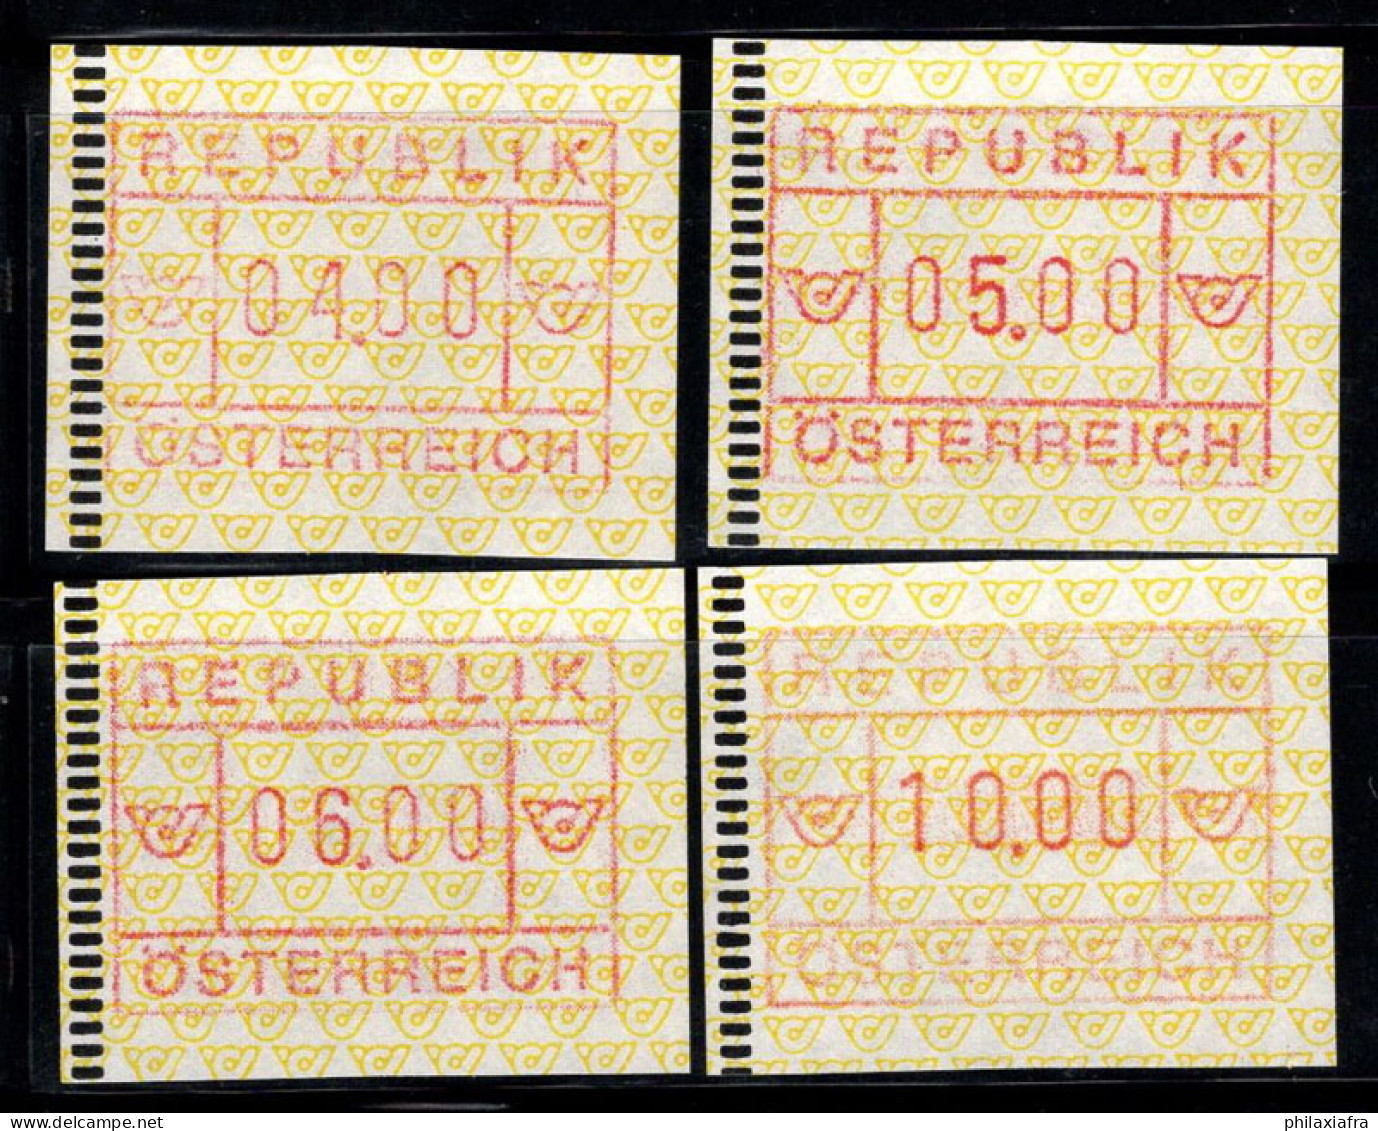 Autriche 1988 Mi. 2 Neuf ** 100% ATM 04, 05, 06, 10 - Macchine Per Obliterare (EMA)